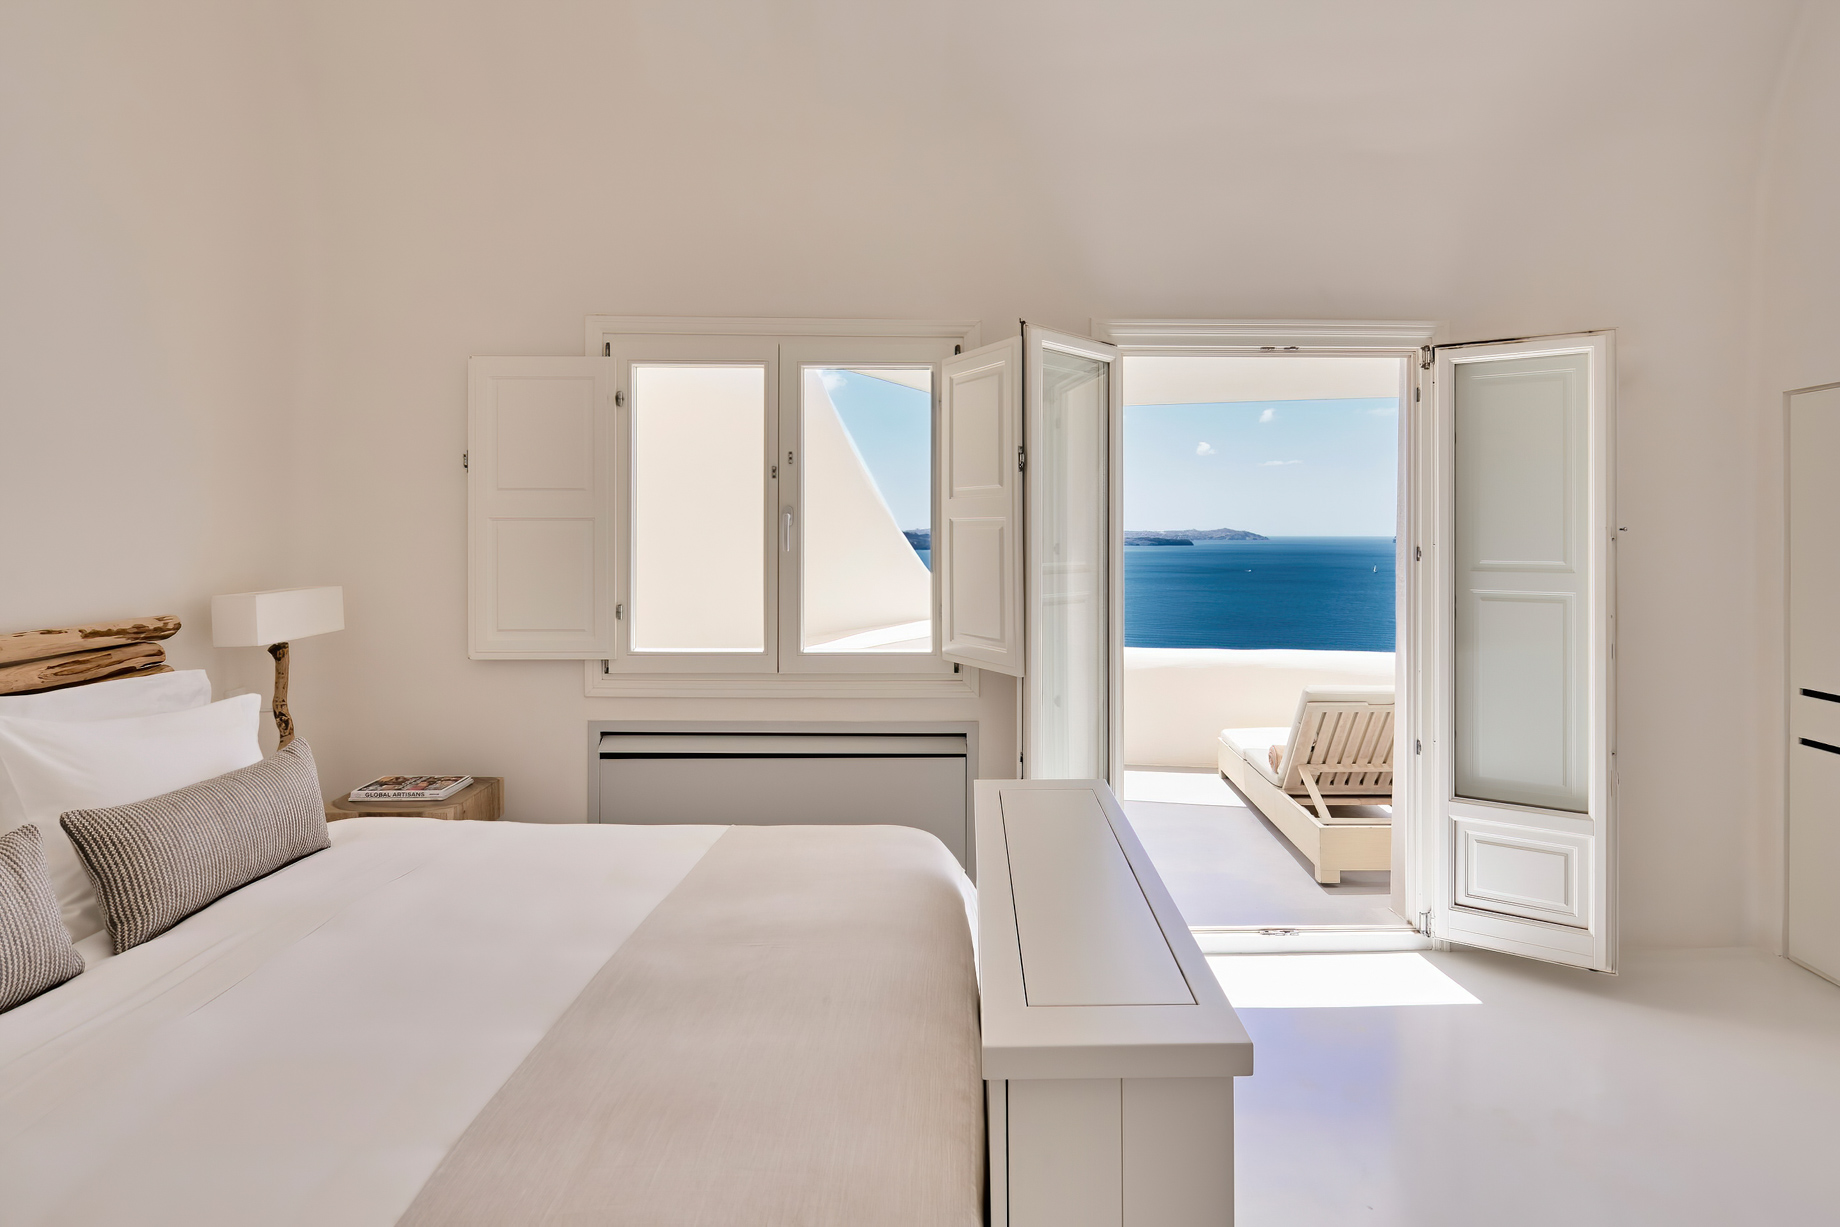 Mystique Hotel Santorini – Oia, Santorini Island, Greece - King Spiritual Suite